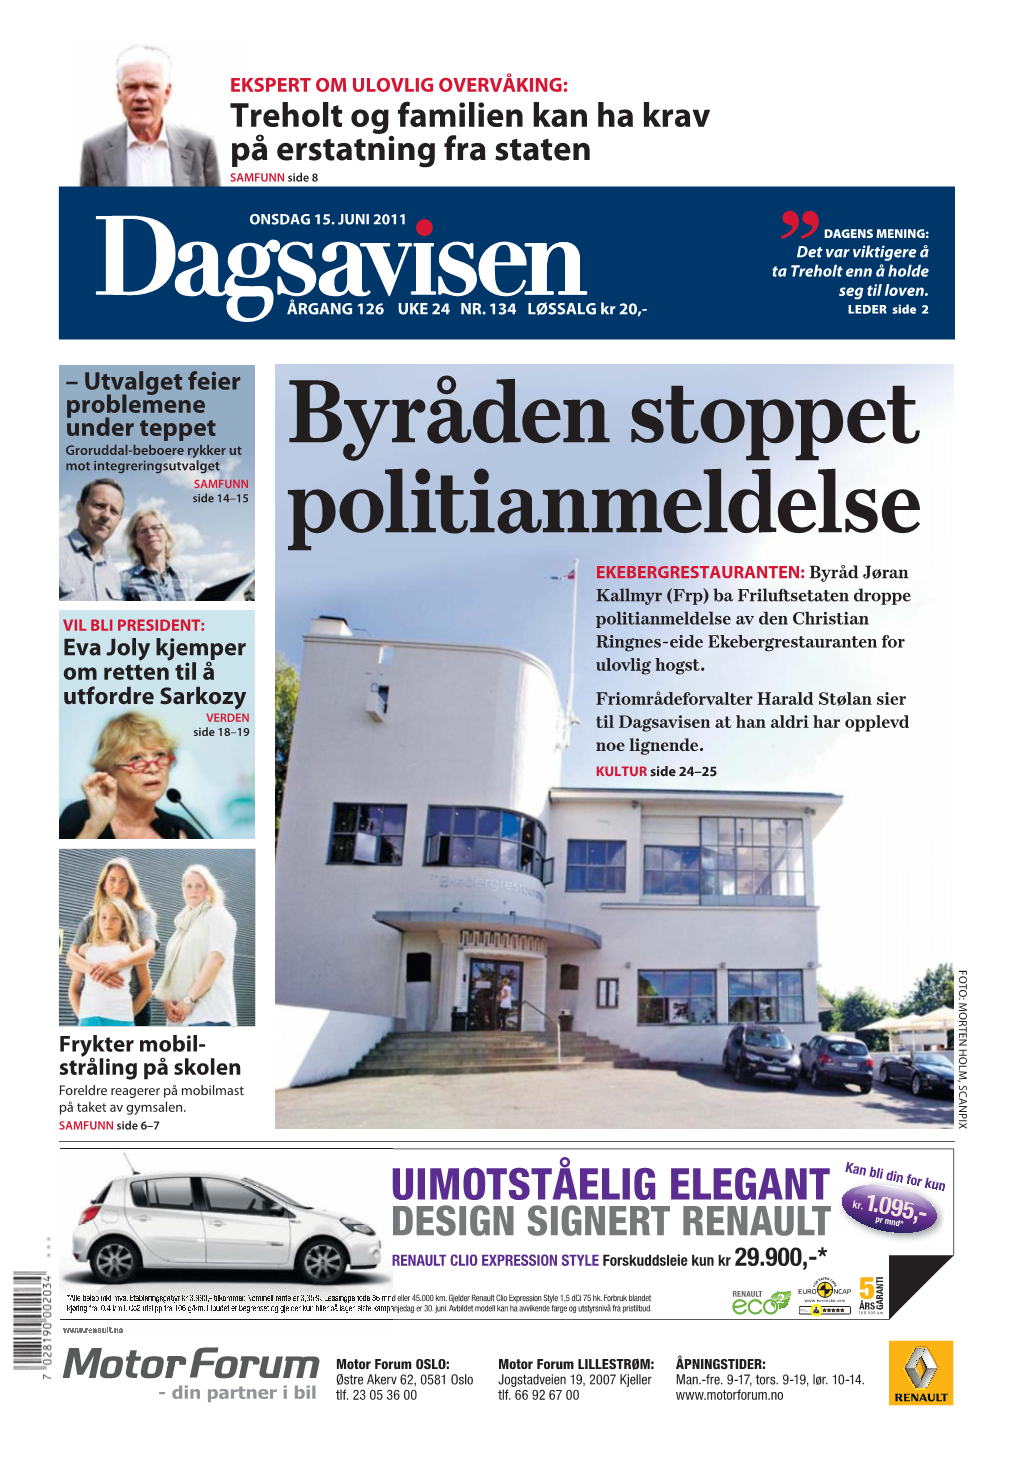 Dagsavisen-20110615 Side 1 24 25